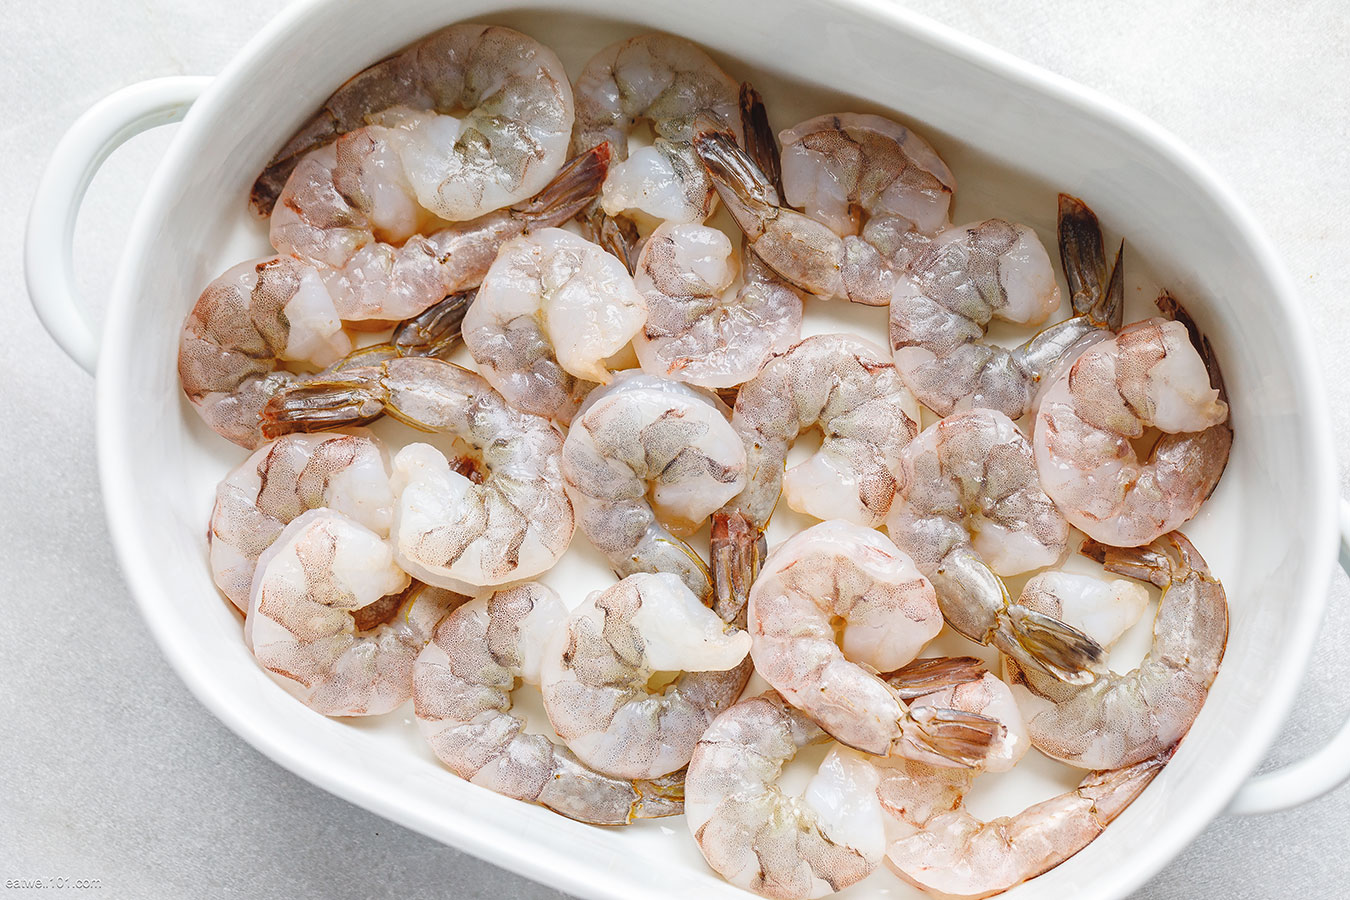 https://www.eatwell101.com/wp-content/uploads/2020/05/Oven-Baked-Shrimp-Recipe-3.jpg